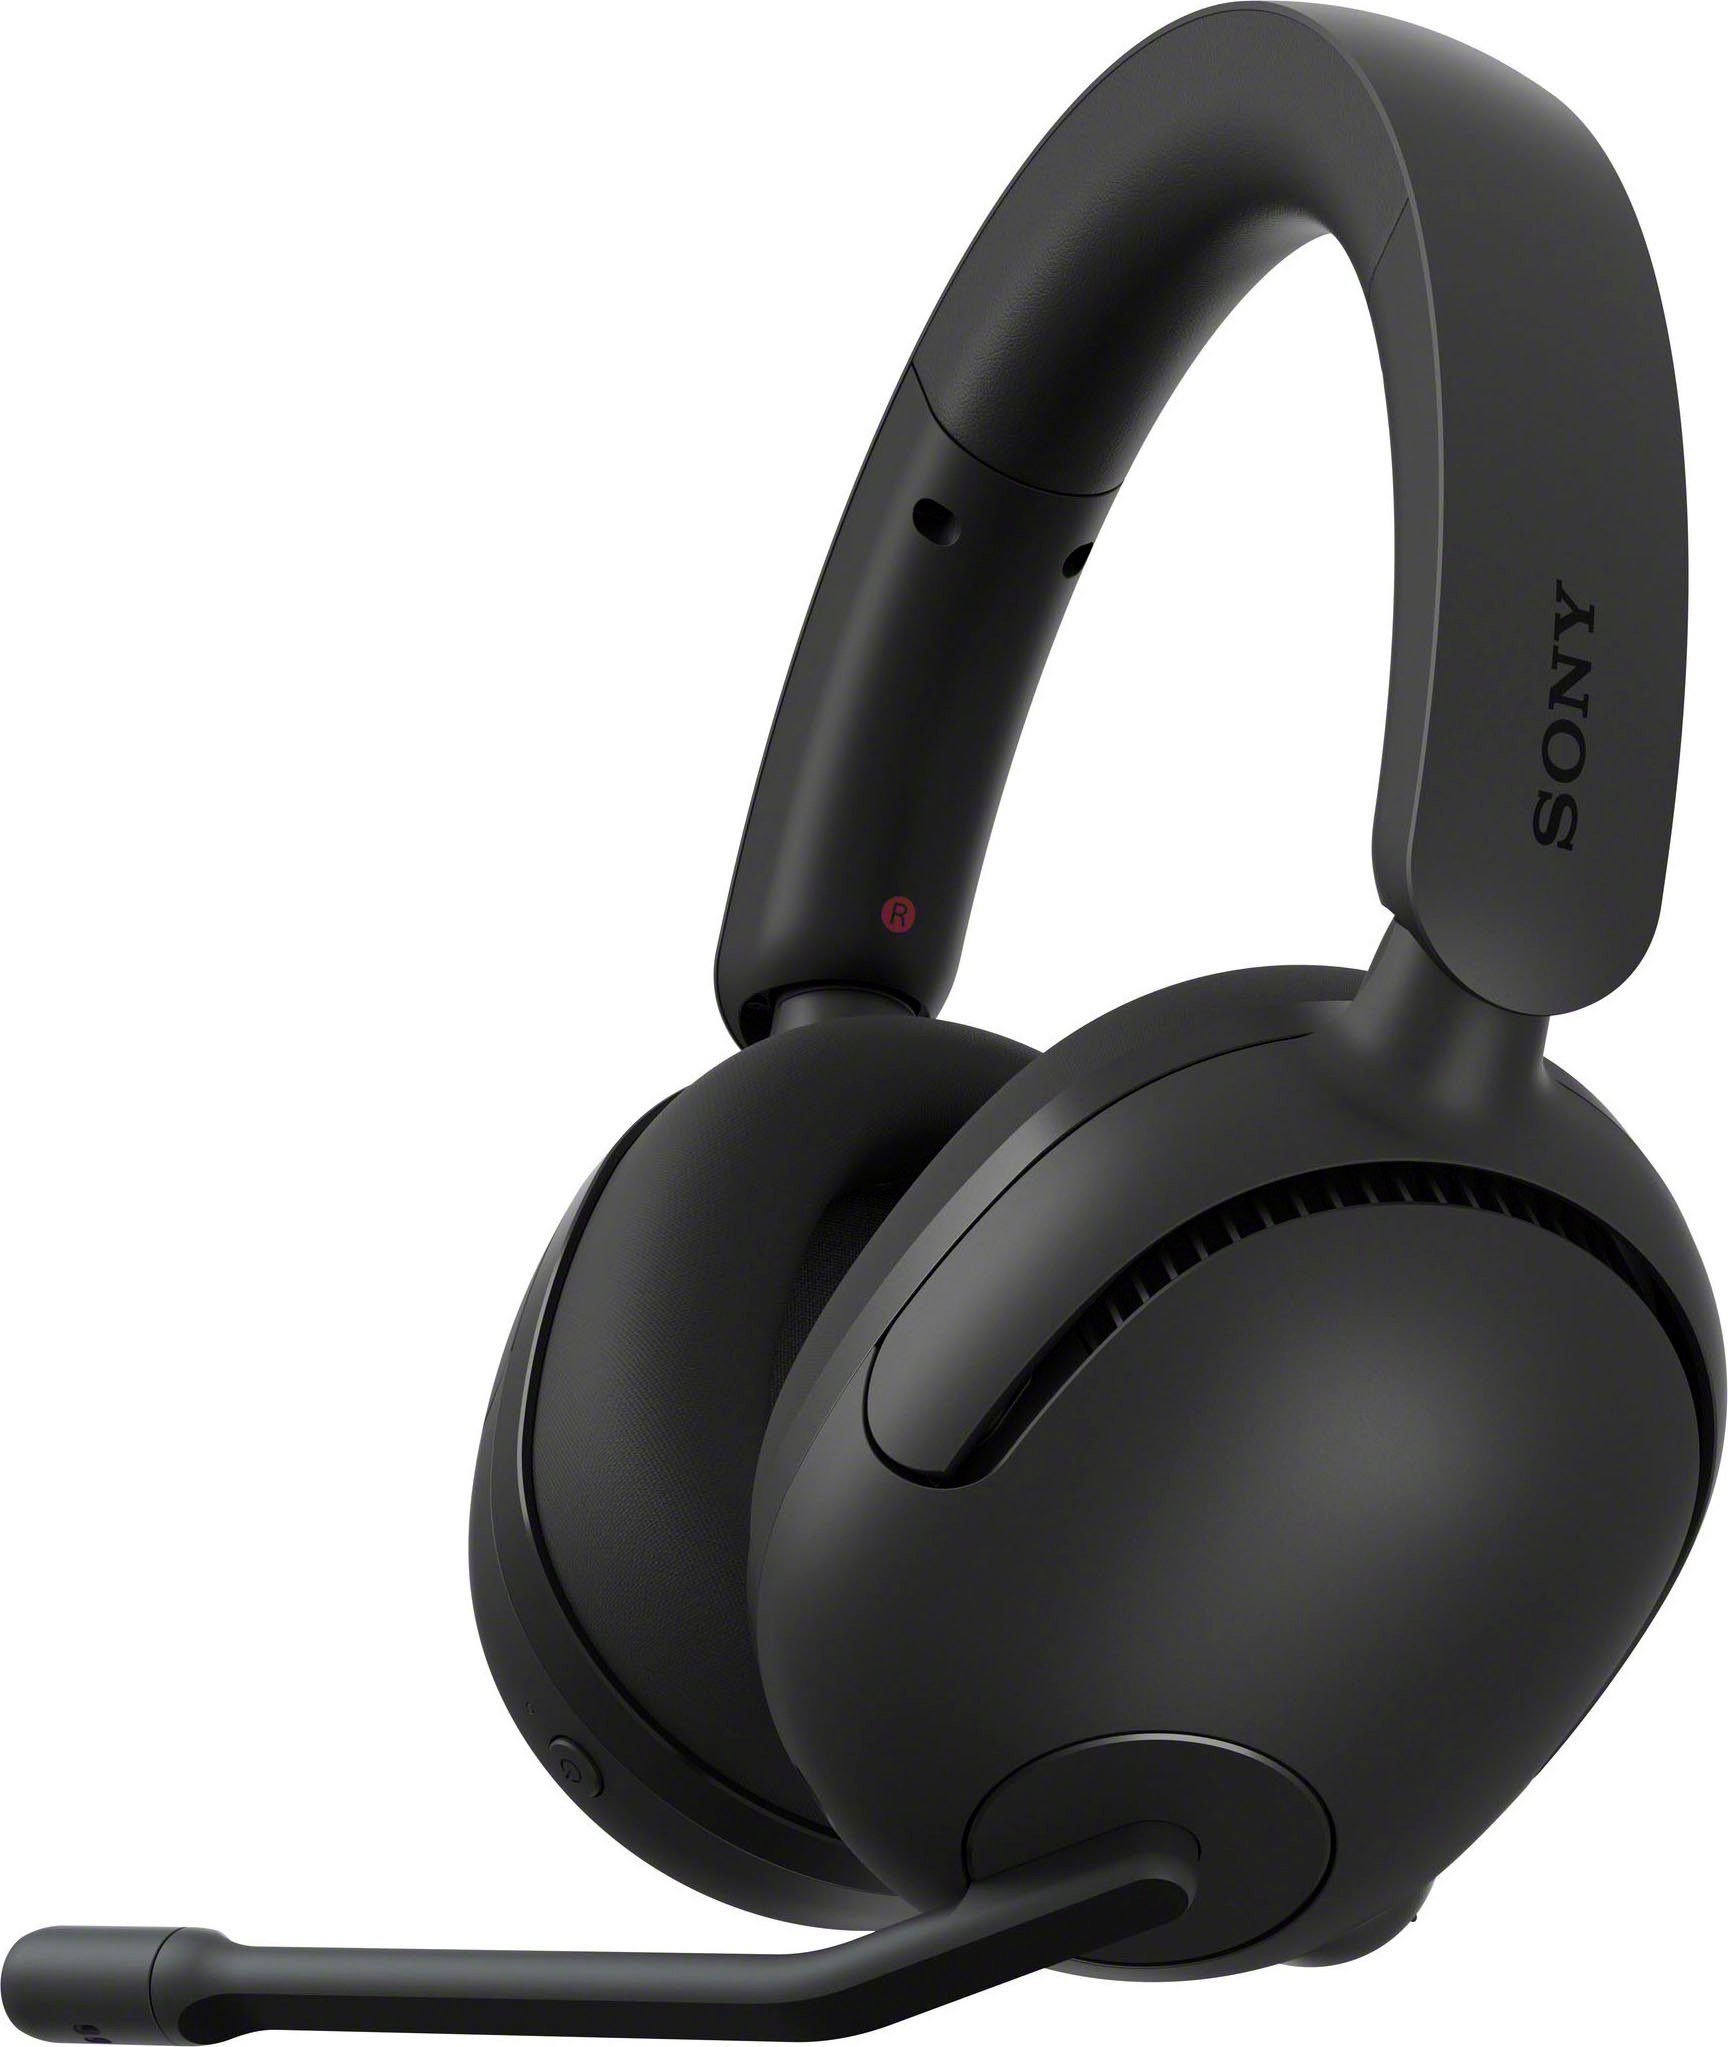 Sony INZONE H5 Gaming-Headset (Rauschunterdrückung, Bluetooth, 360 SpatialSound, 28Std Akkulaufzeit, geringe Latenz, Mic mit AI) schwarz